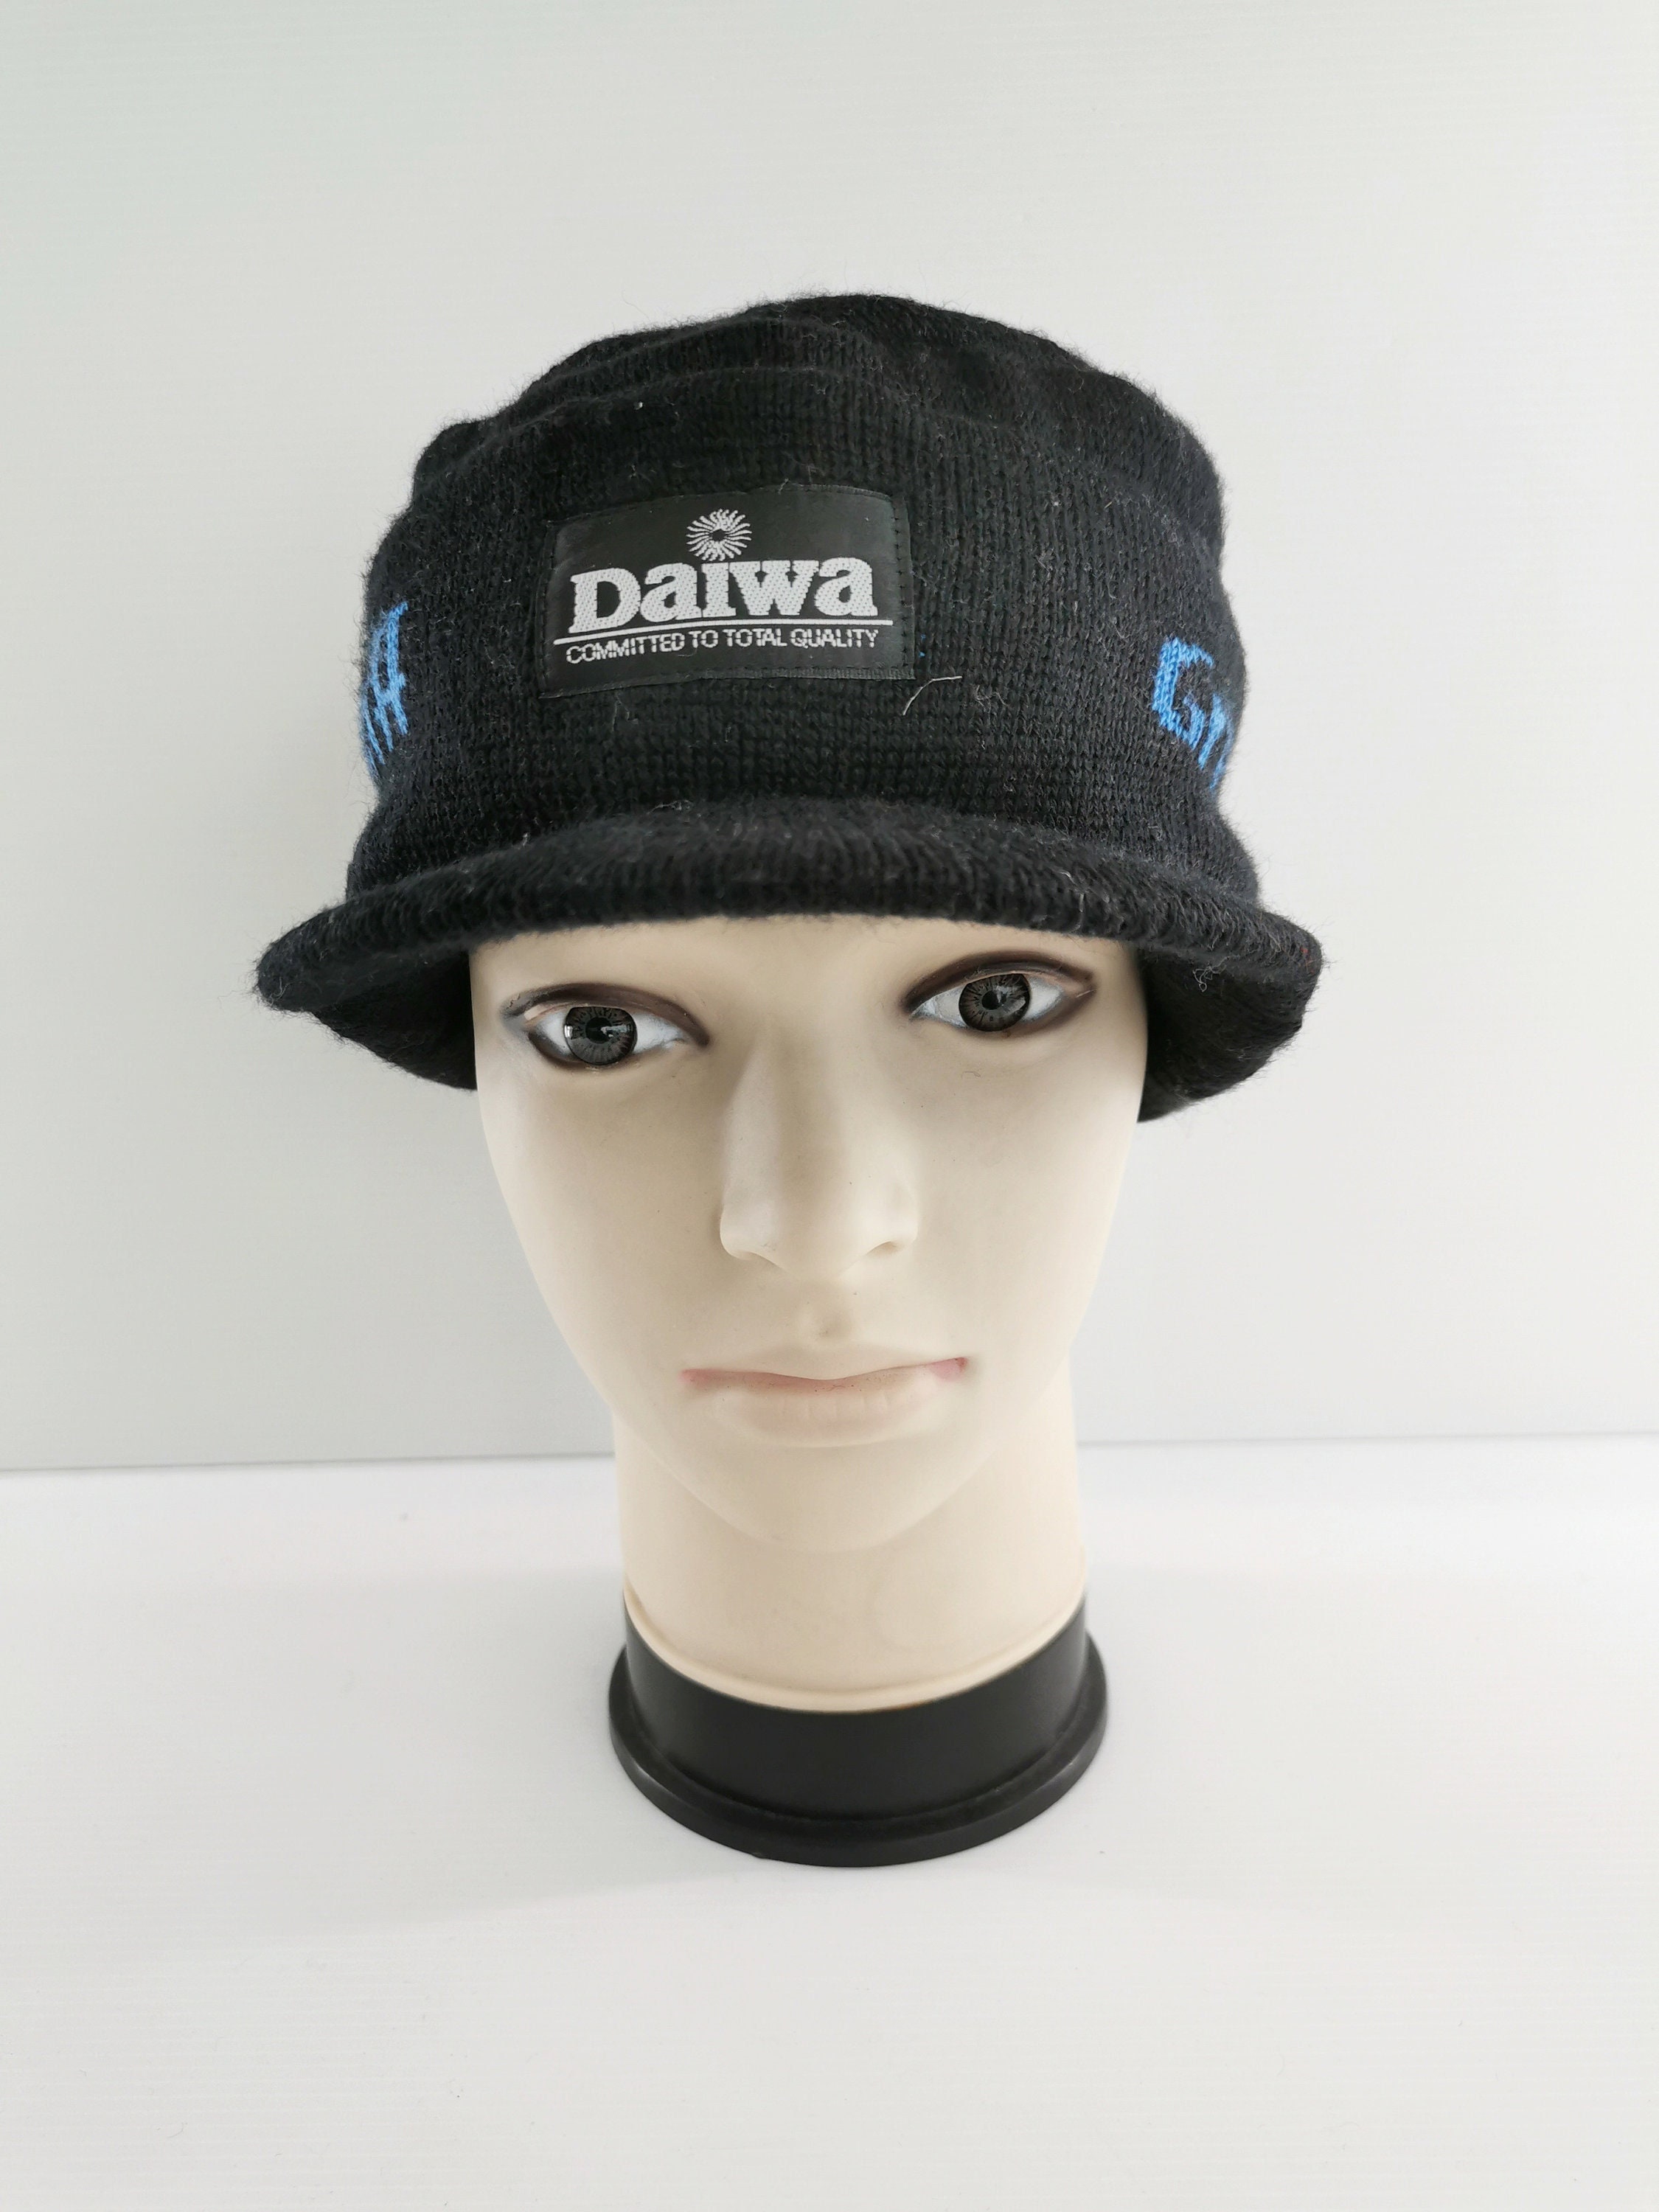 Vintage Daiwa Fishing Reels Snapback Trucker Hat Made In Korea NWOT